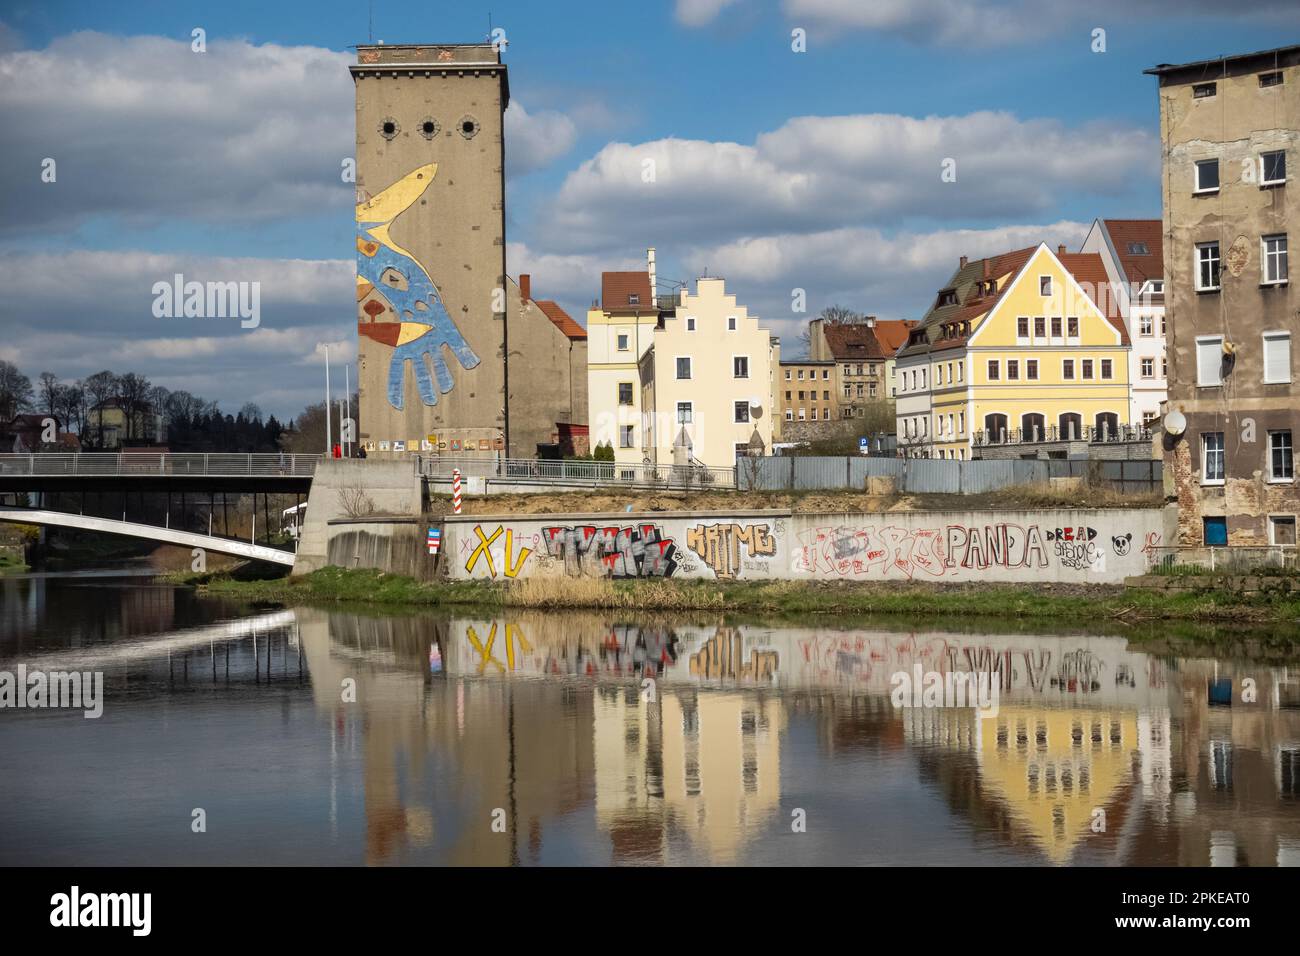 Pont Neisse à Zgorzelec. Banque polonaise de la Neisse. ancien site de l'usine. réflexions des maisons sur l'eau. graffiti sur le mur. Banque D'Images